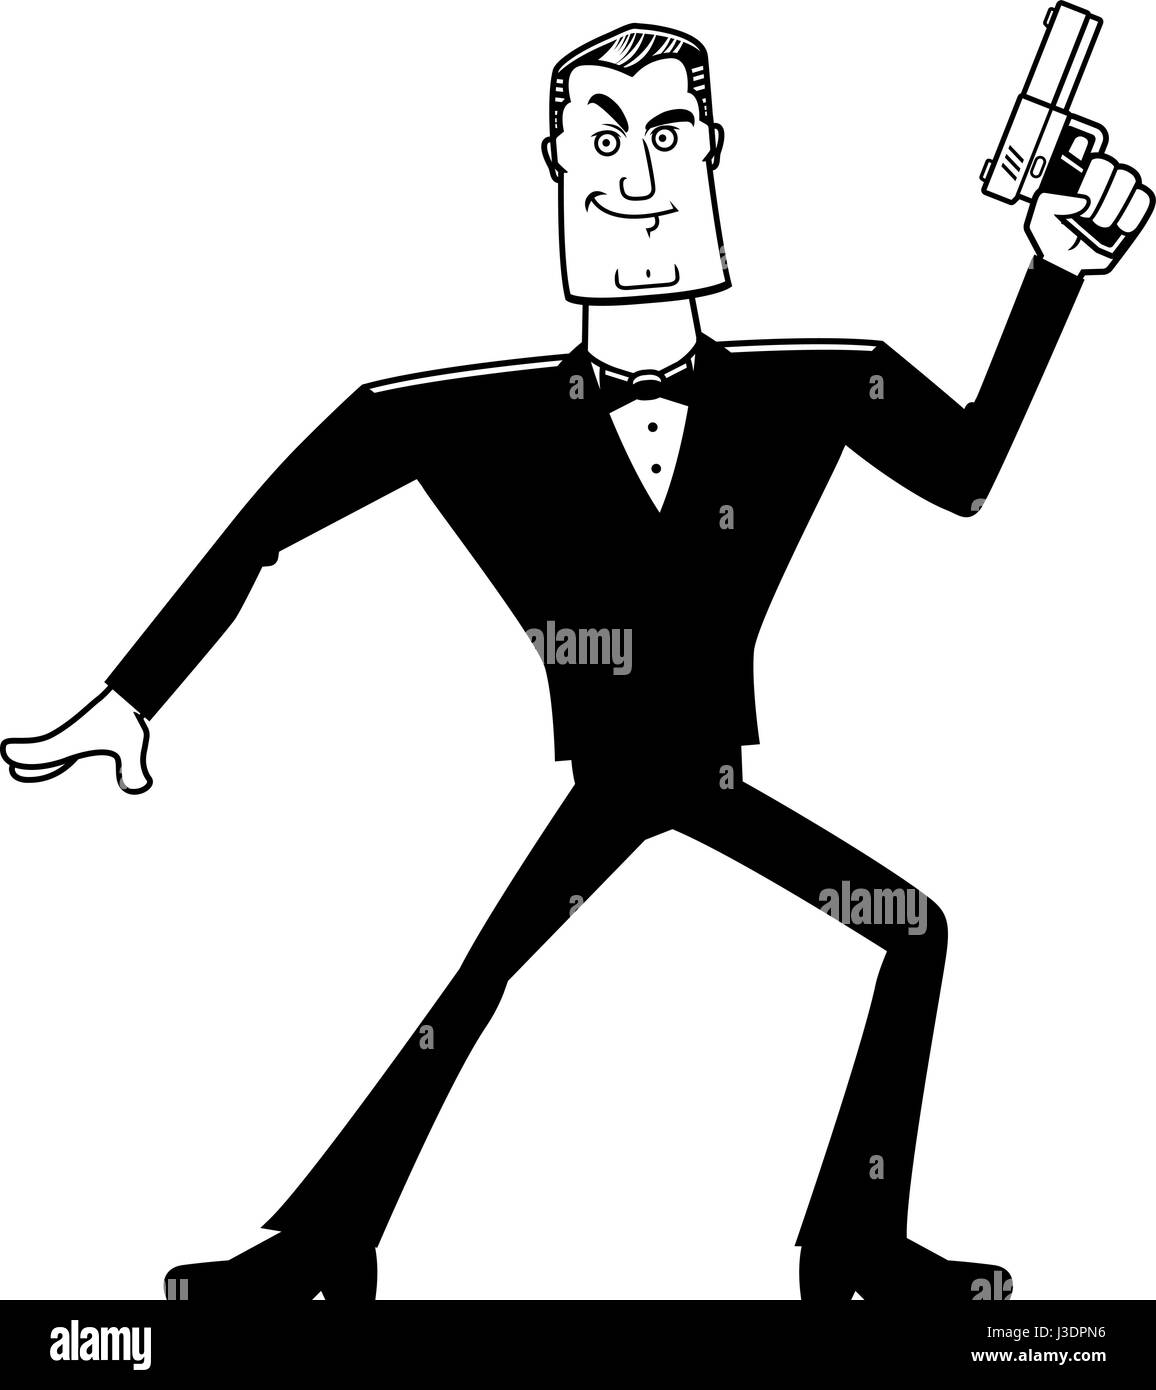 A cartoon illustration of a spy in a tuxedo with a gun. Stock Vector